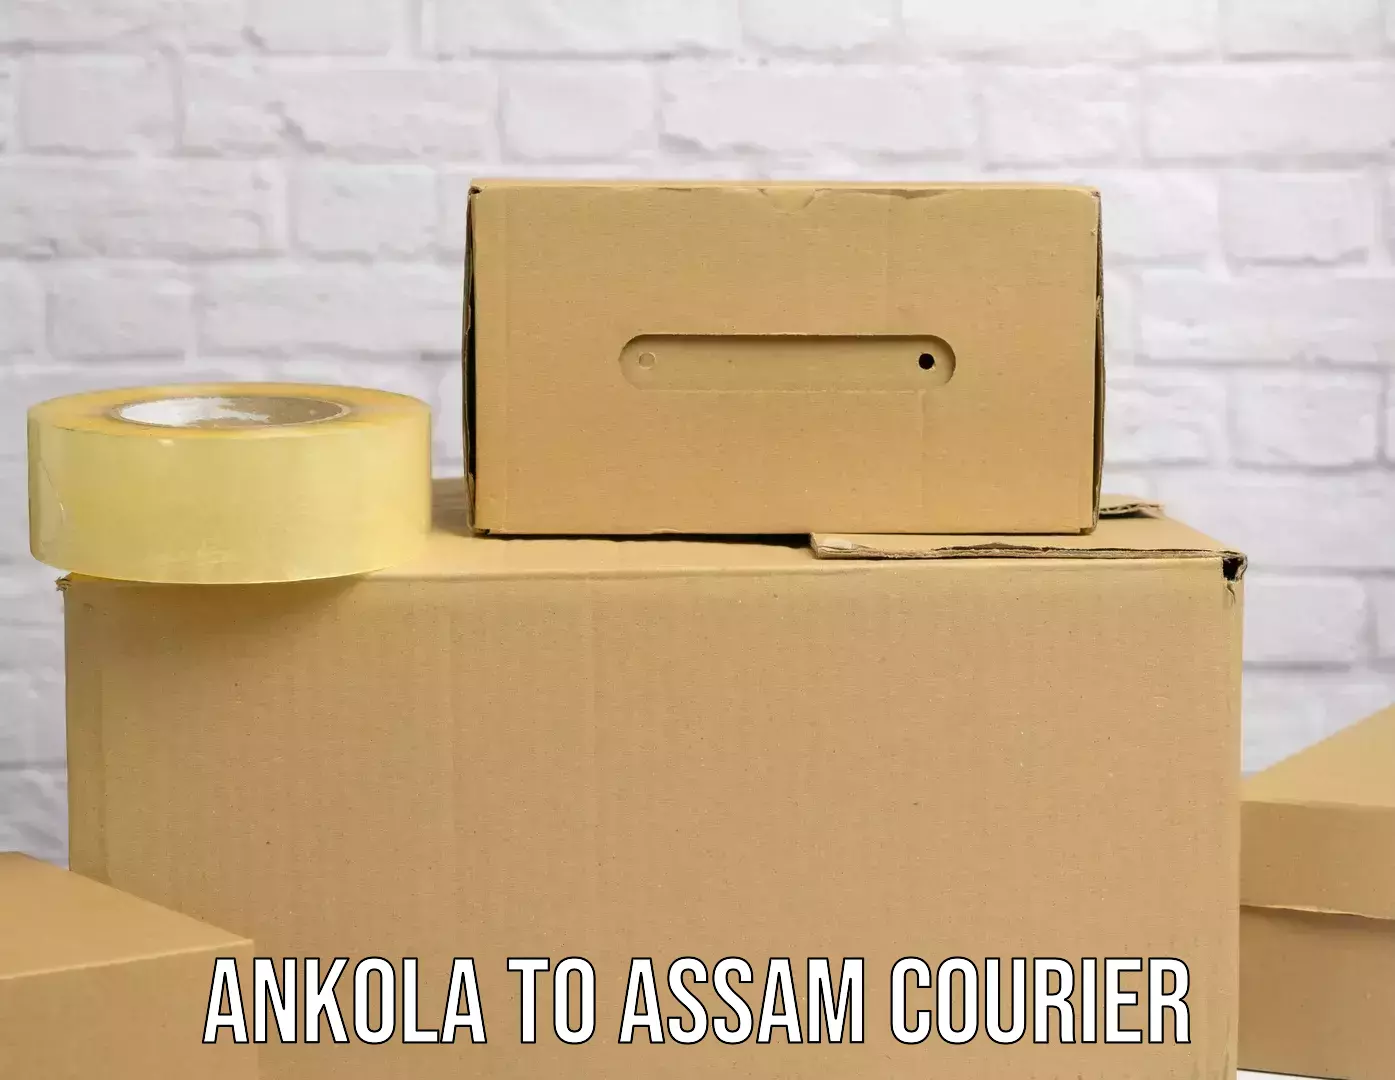 Seamless shipping service Ankola to Mayang